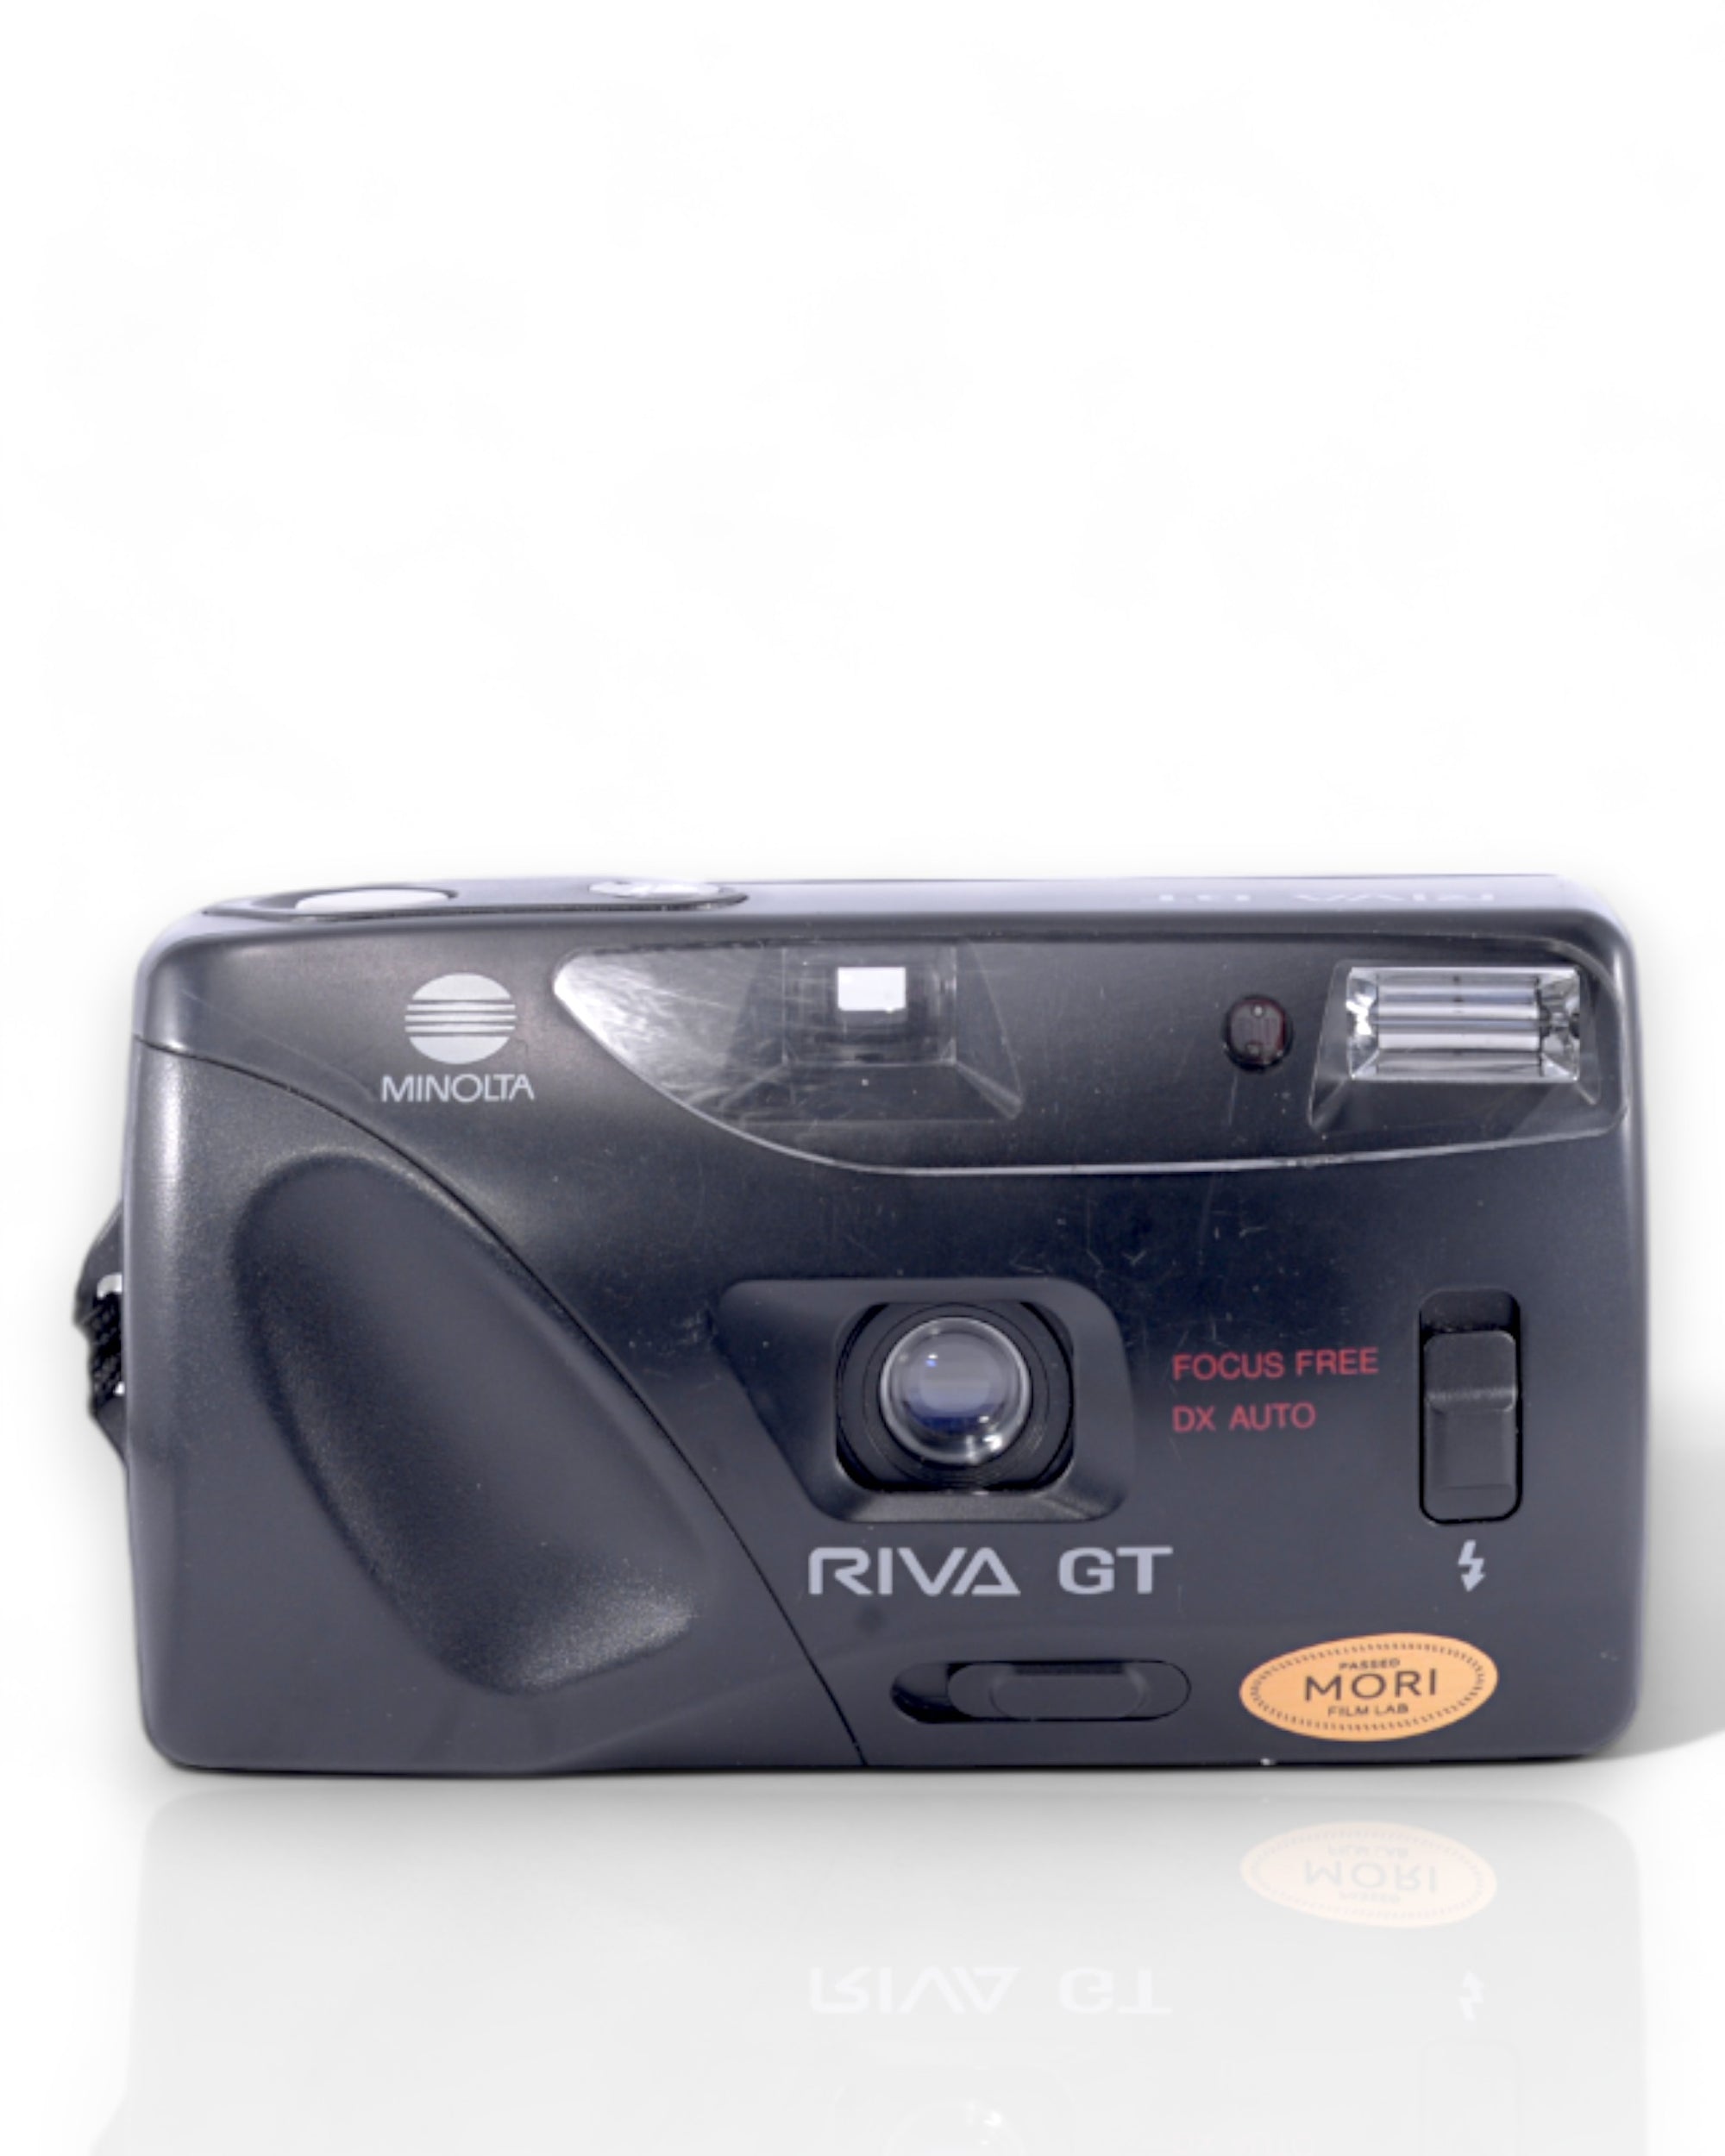 Minolta Riva GT 35mm Point & Shoot Film Camera with 35mm Lens